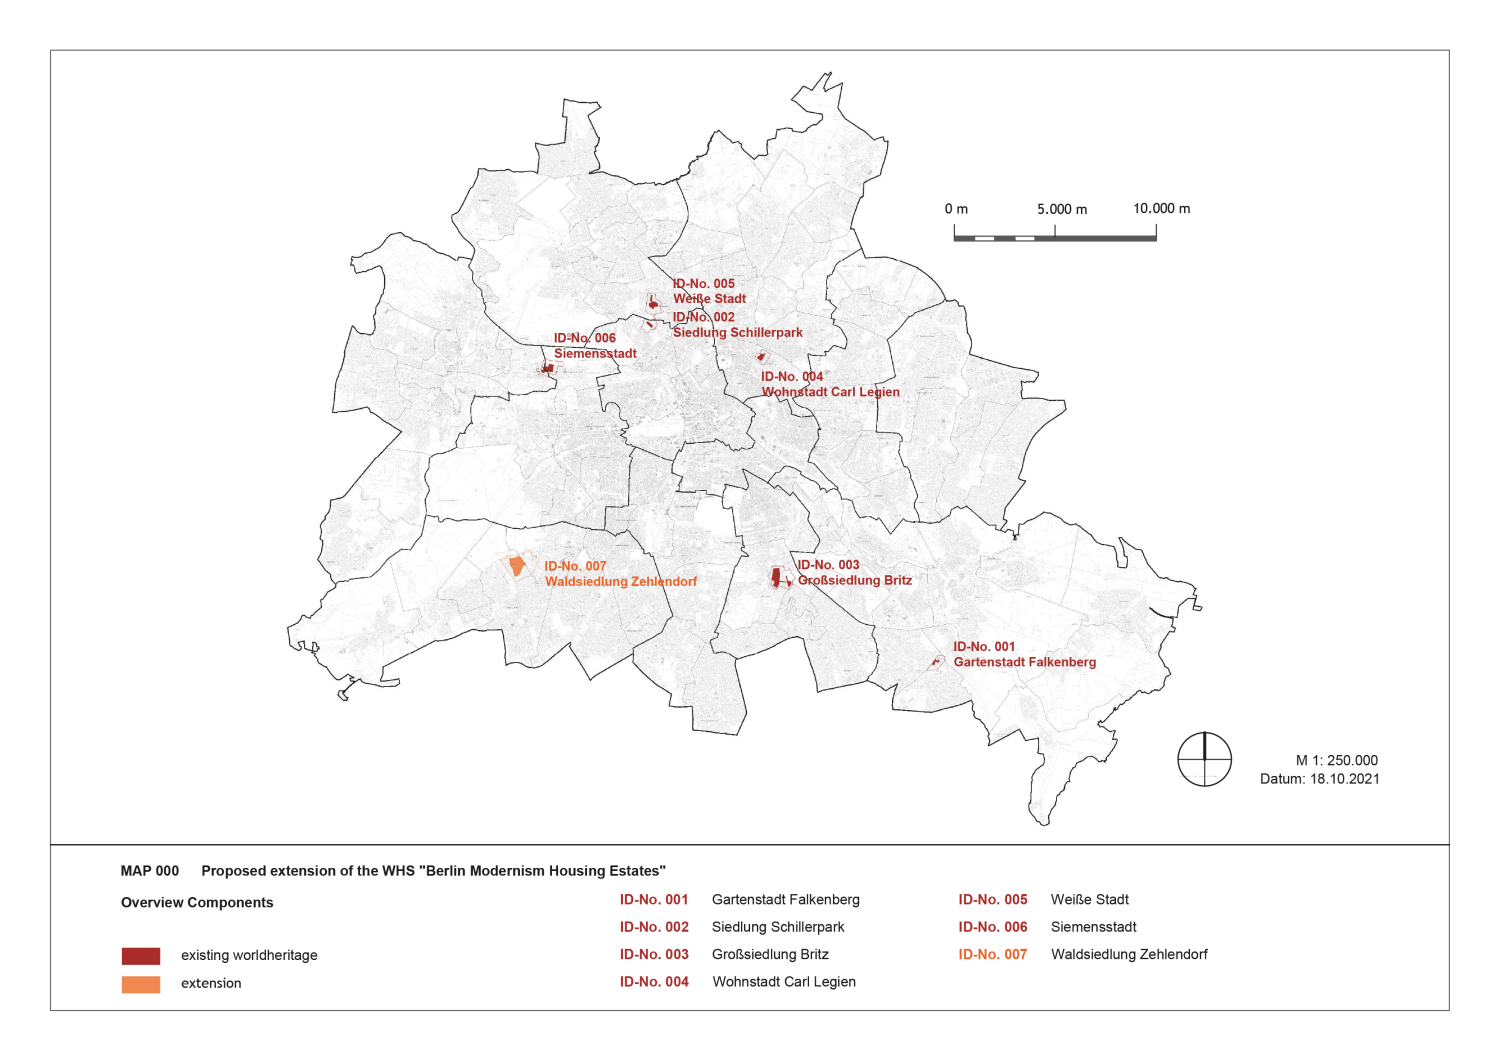 Karte mit der Lage der Berliner Welterbesiedlungen inklusive Waldsiedlung Zehlendorf